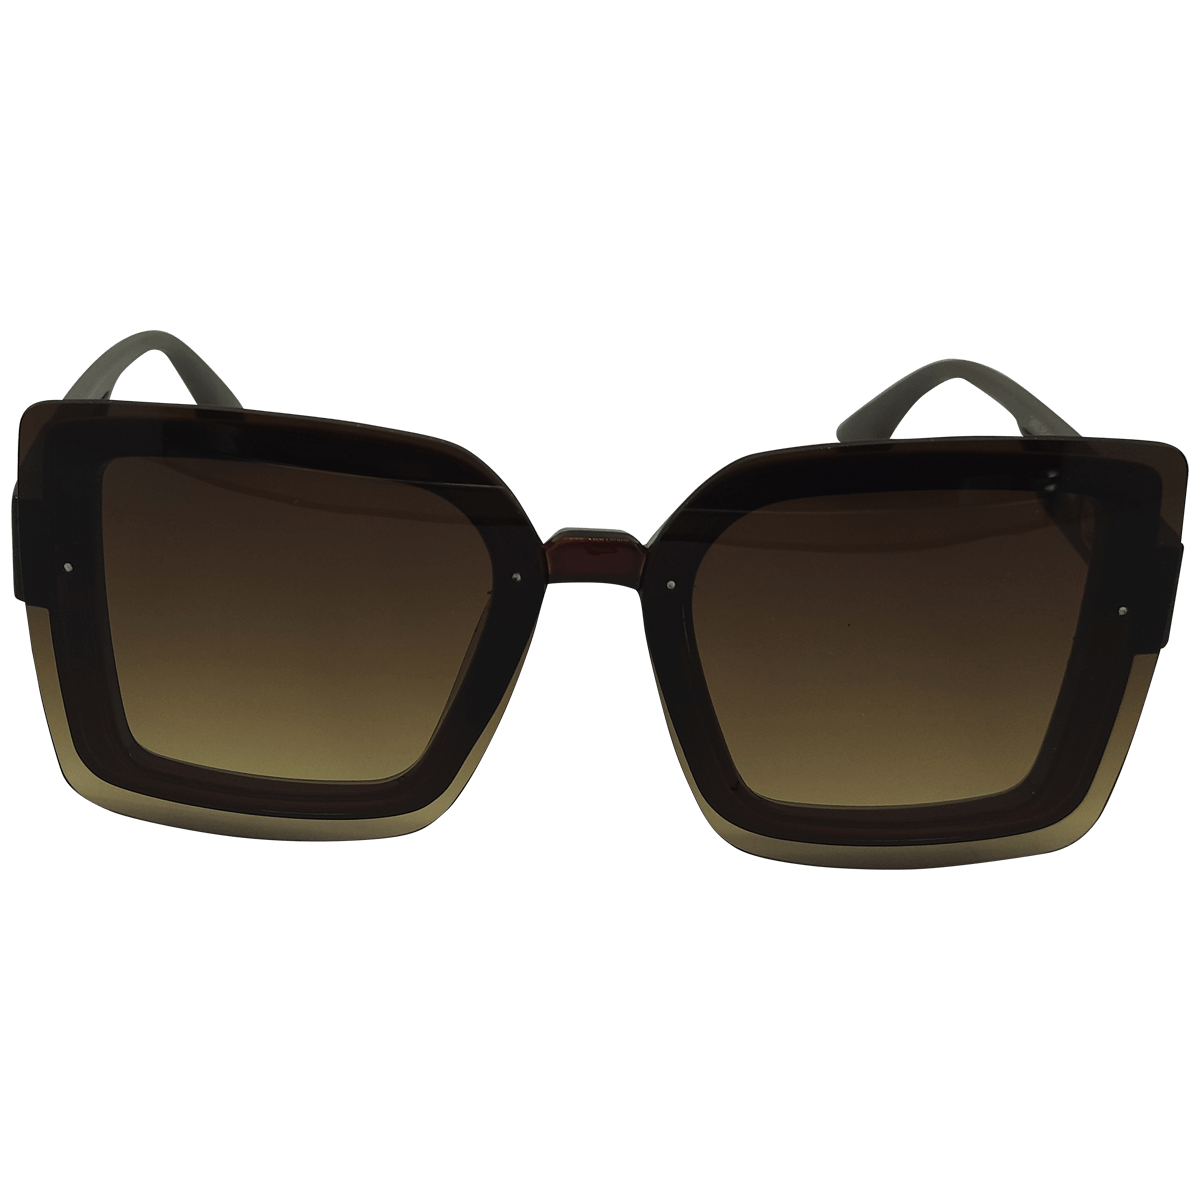 nb-2493-sunglasses